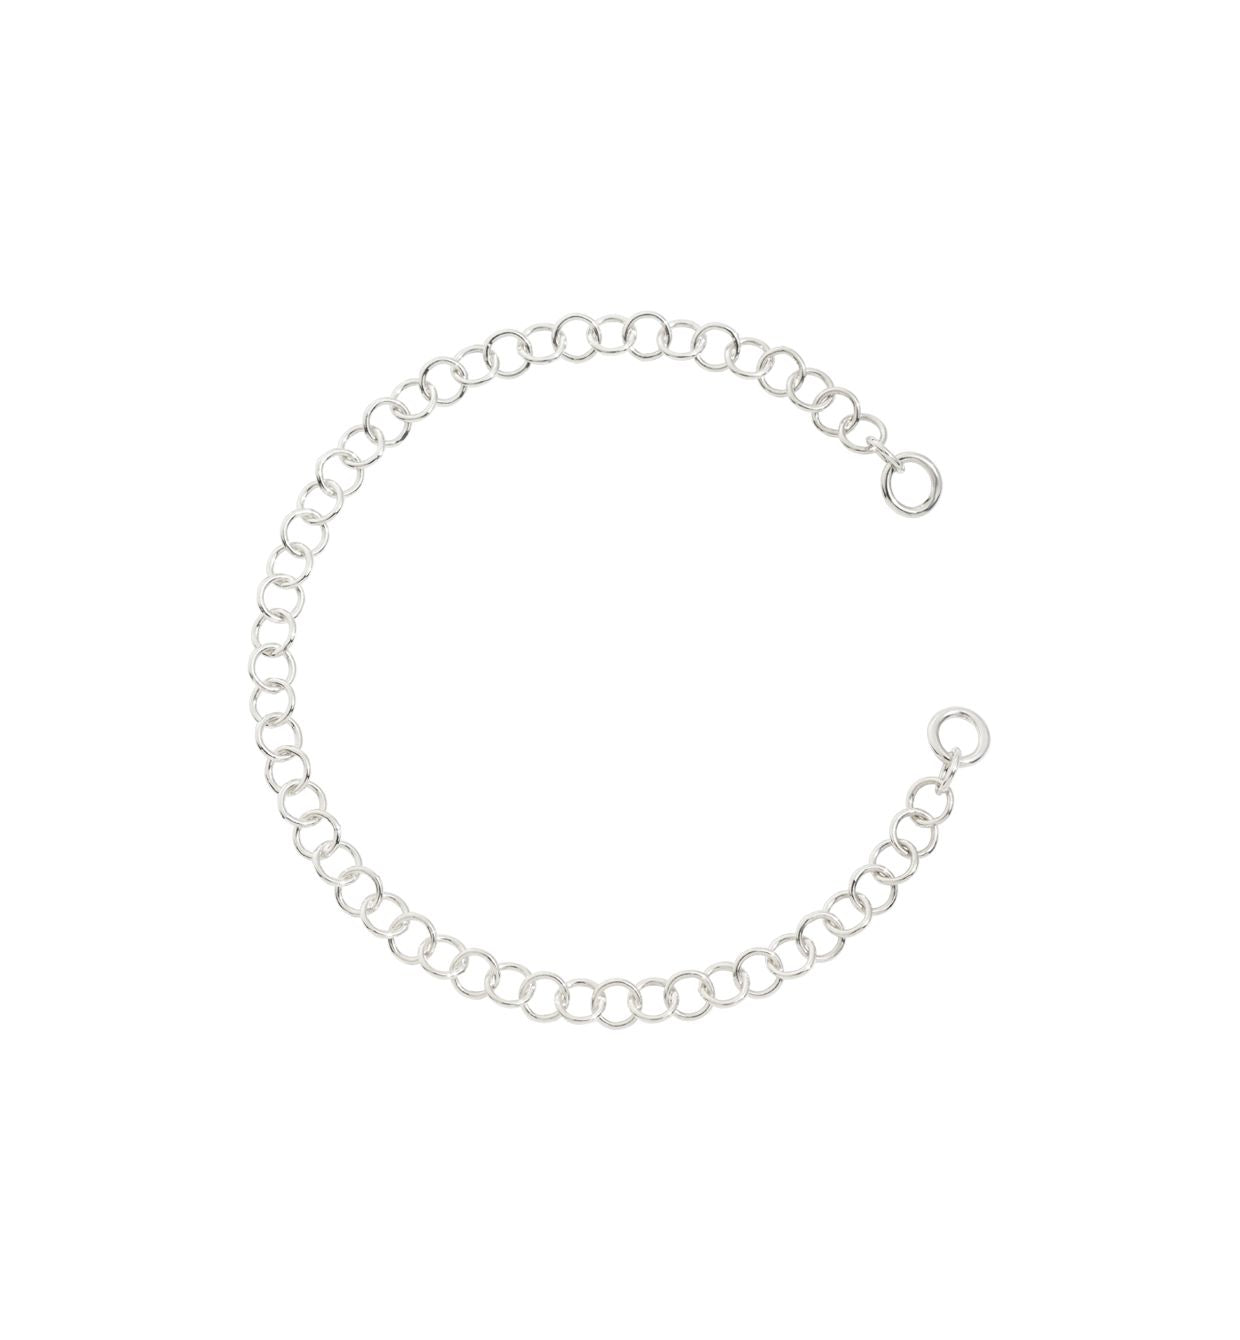 DoDo Lightweight Chain Bracelet in Silver - Orsini Jewellers NZ